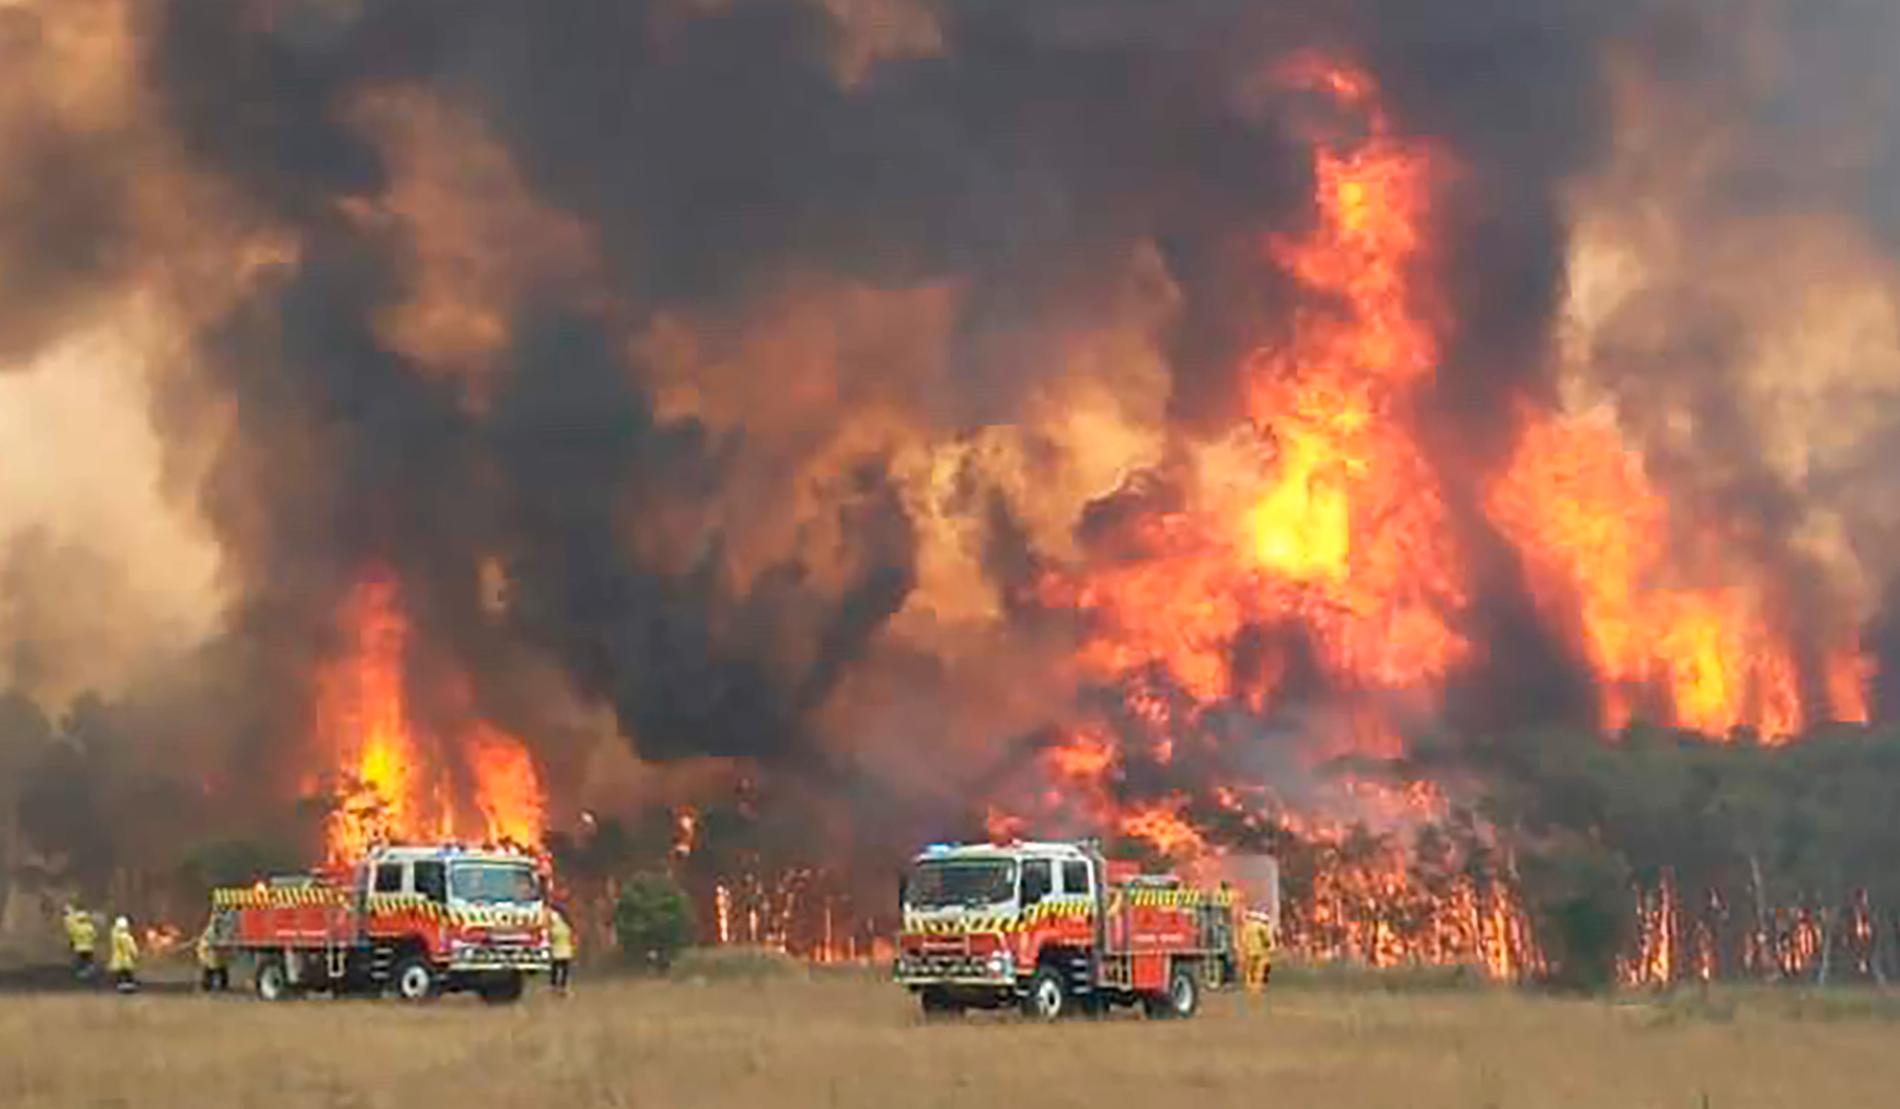 Brandmän försöker bekämpa en brand i Charmhaven, Australien.